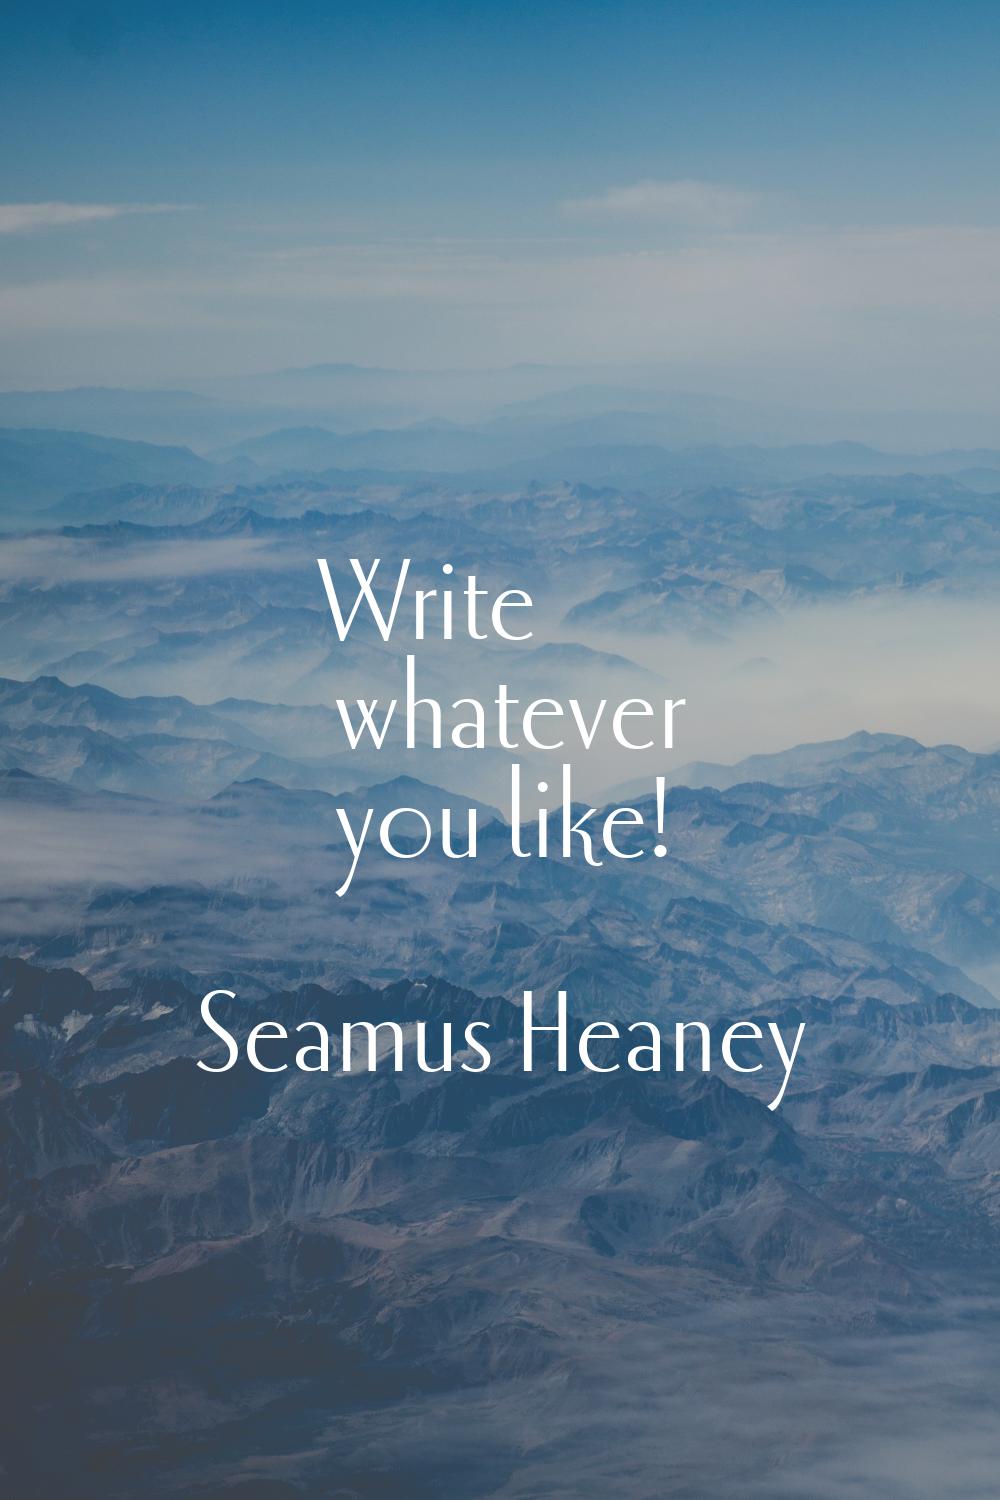 Write whatever you like!